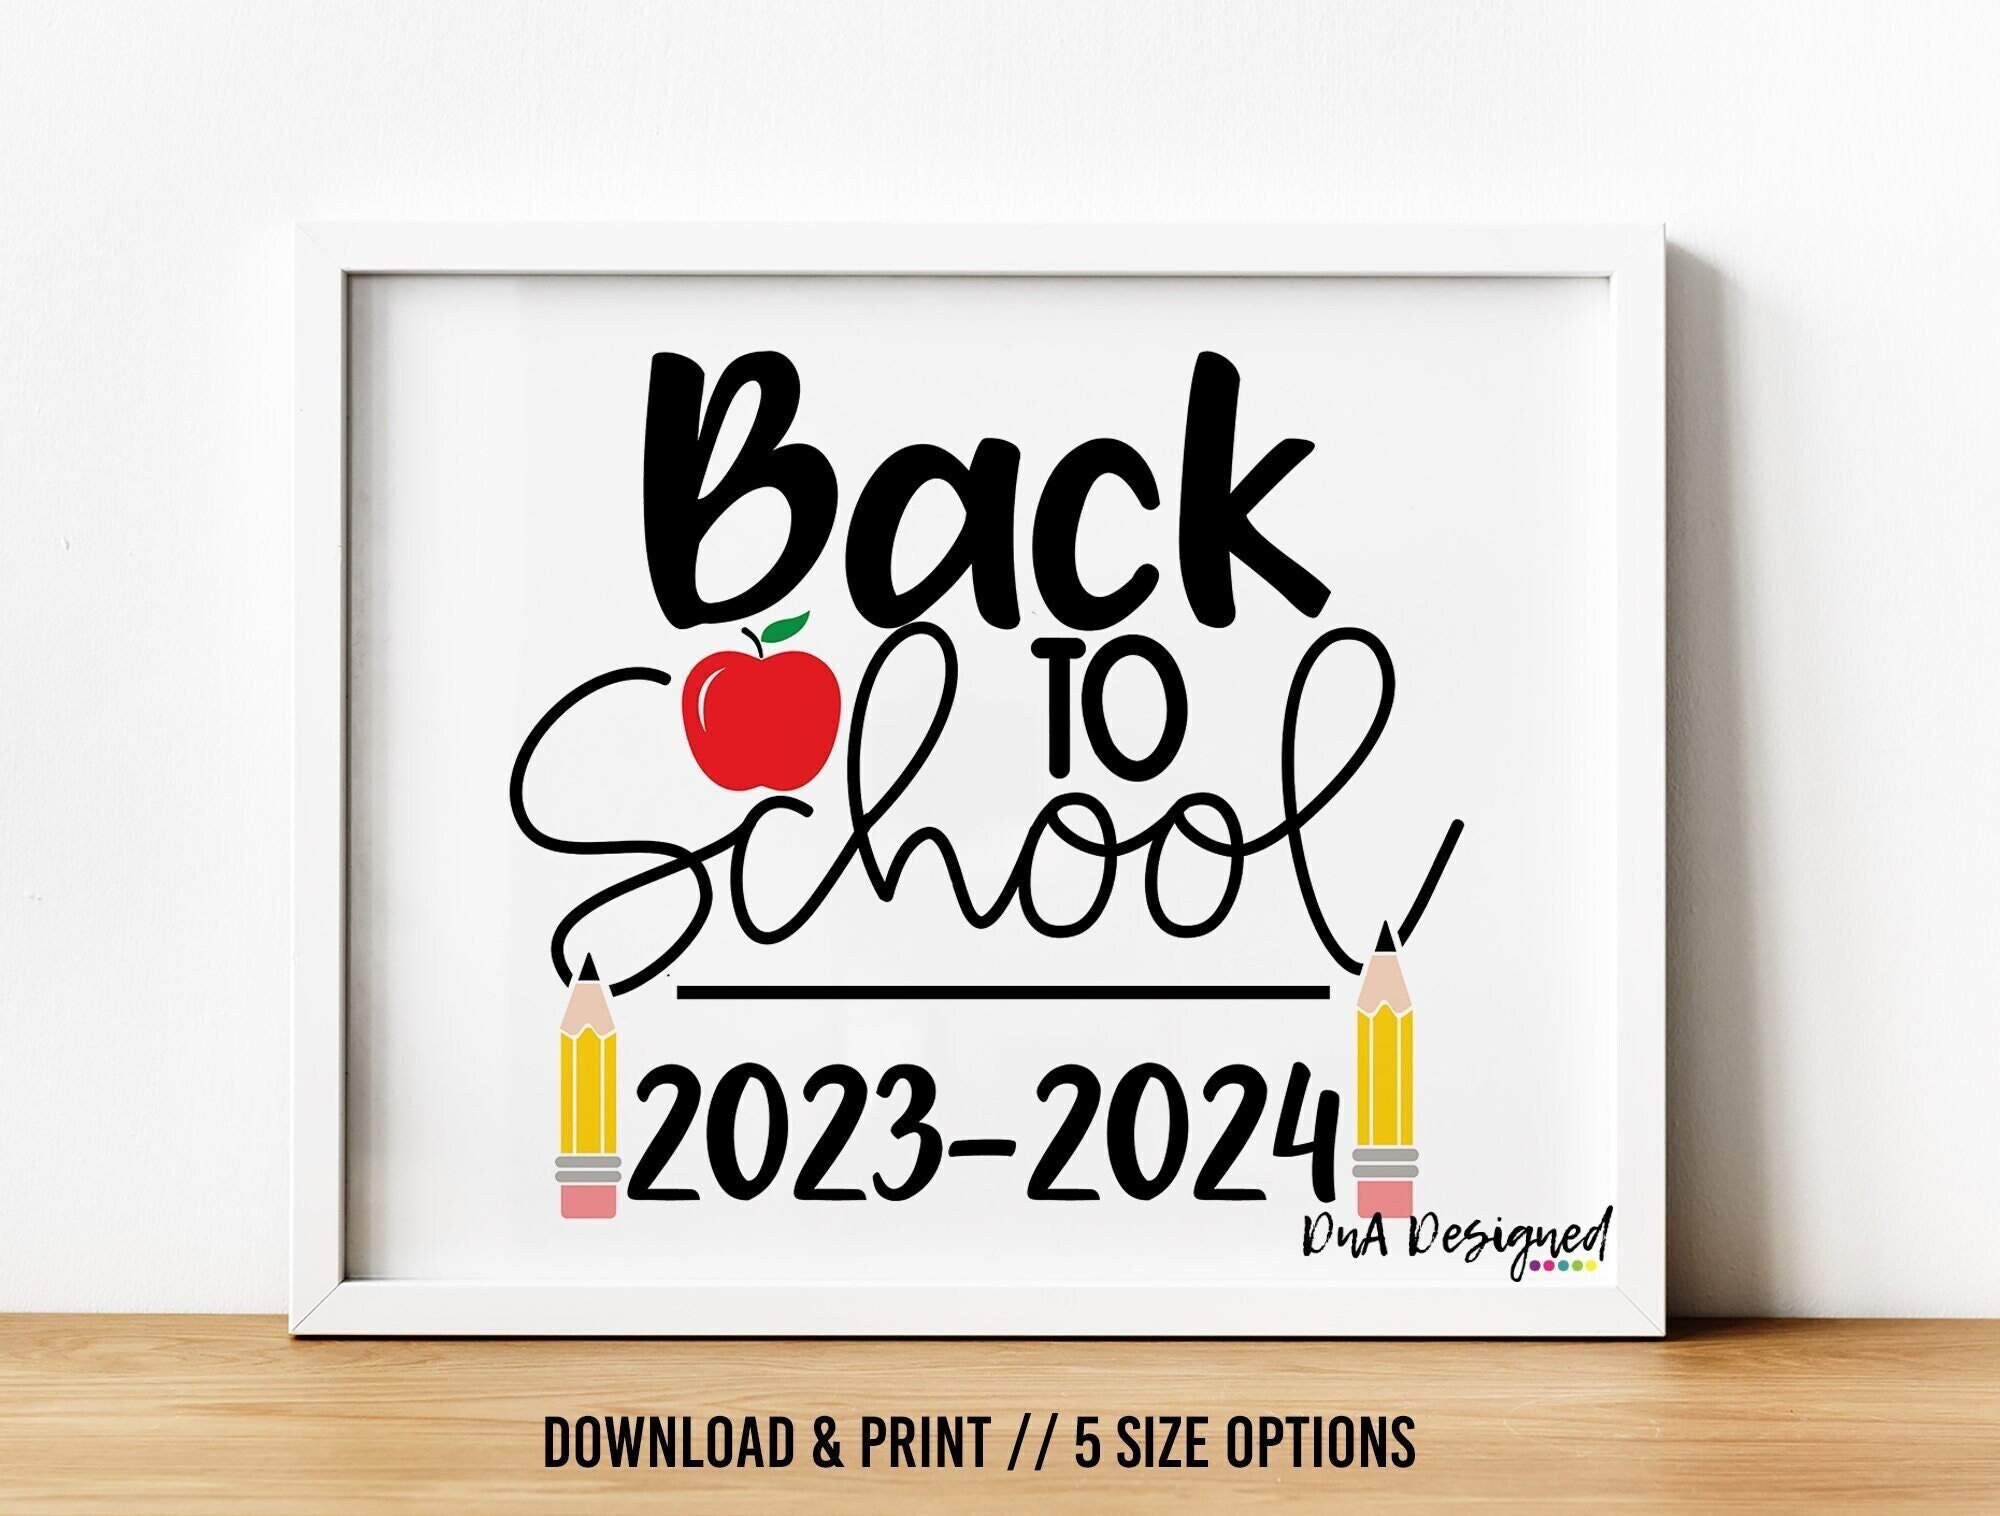 150 Back to School ideas in 2023